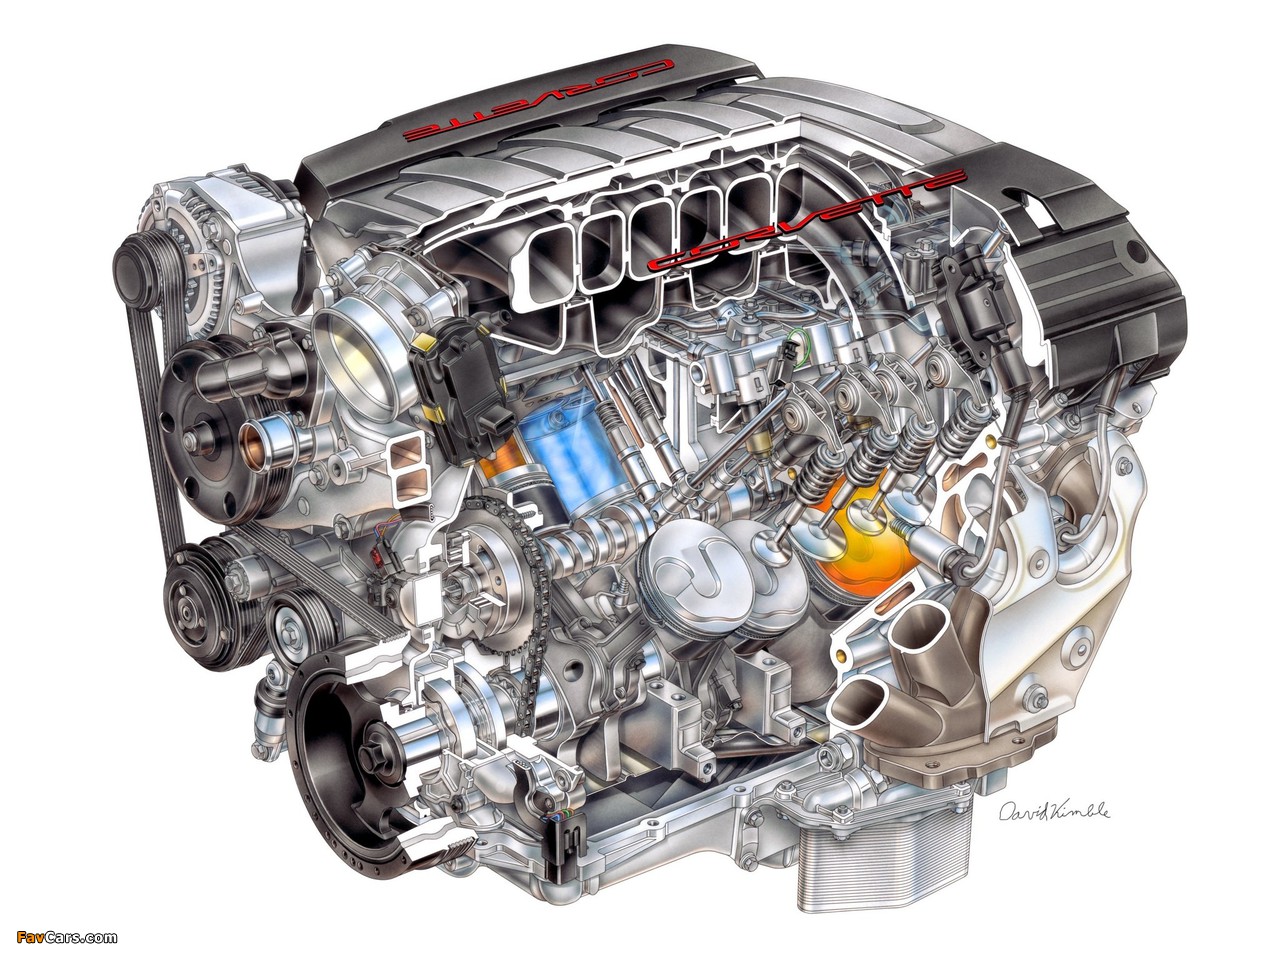 Images of Engines  Corvette LT1 6.2L V-8 VVT DI (1280 x 960)